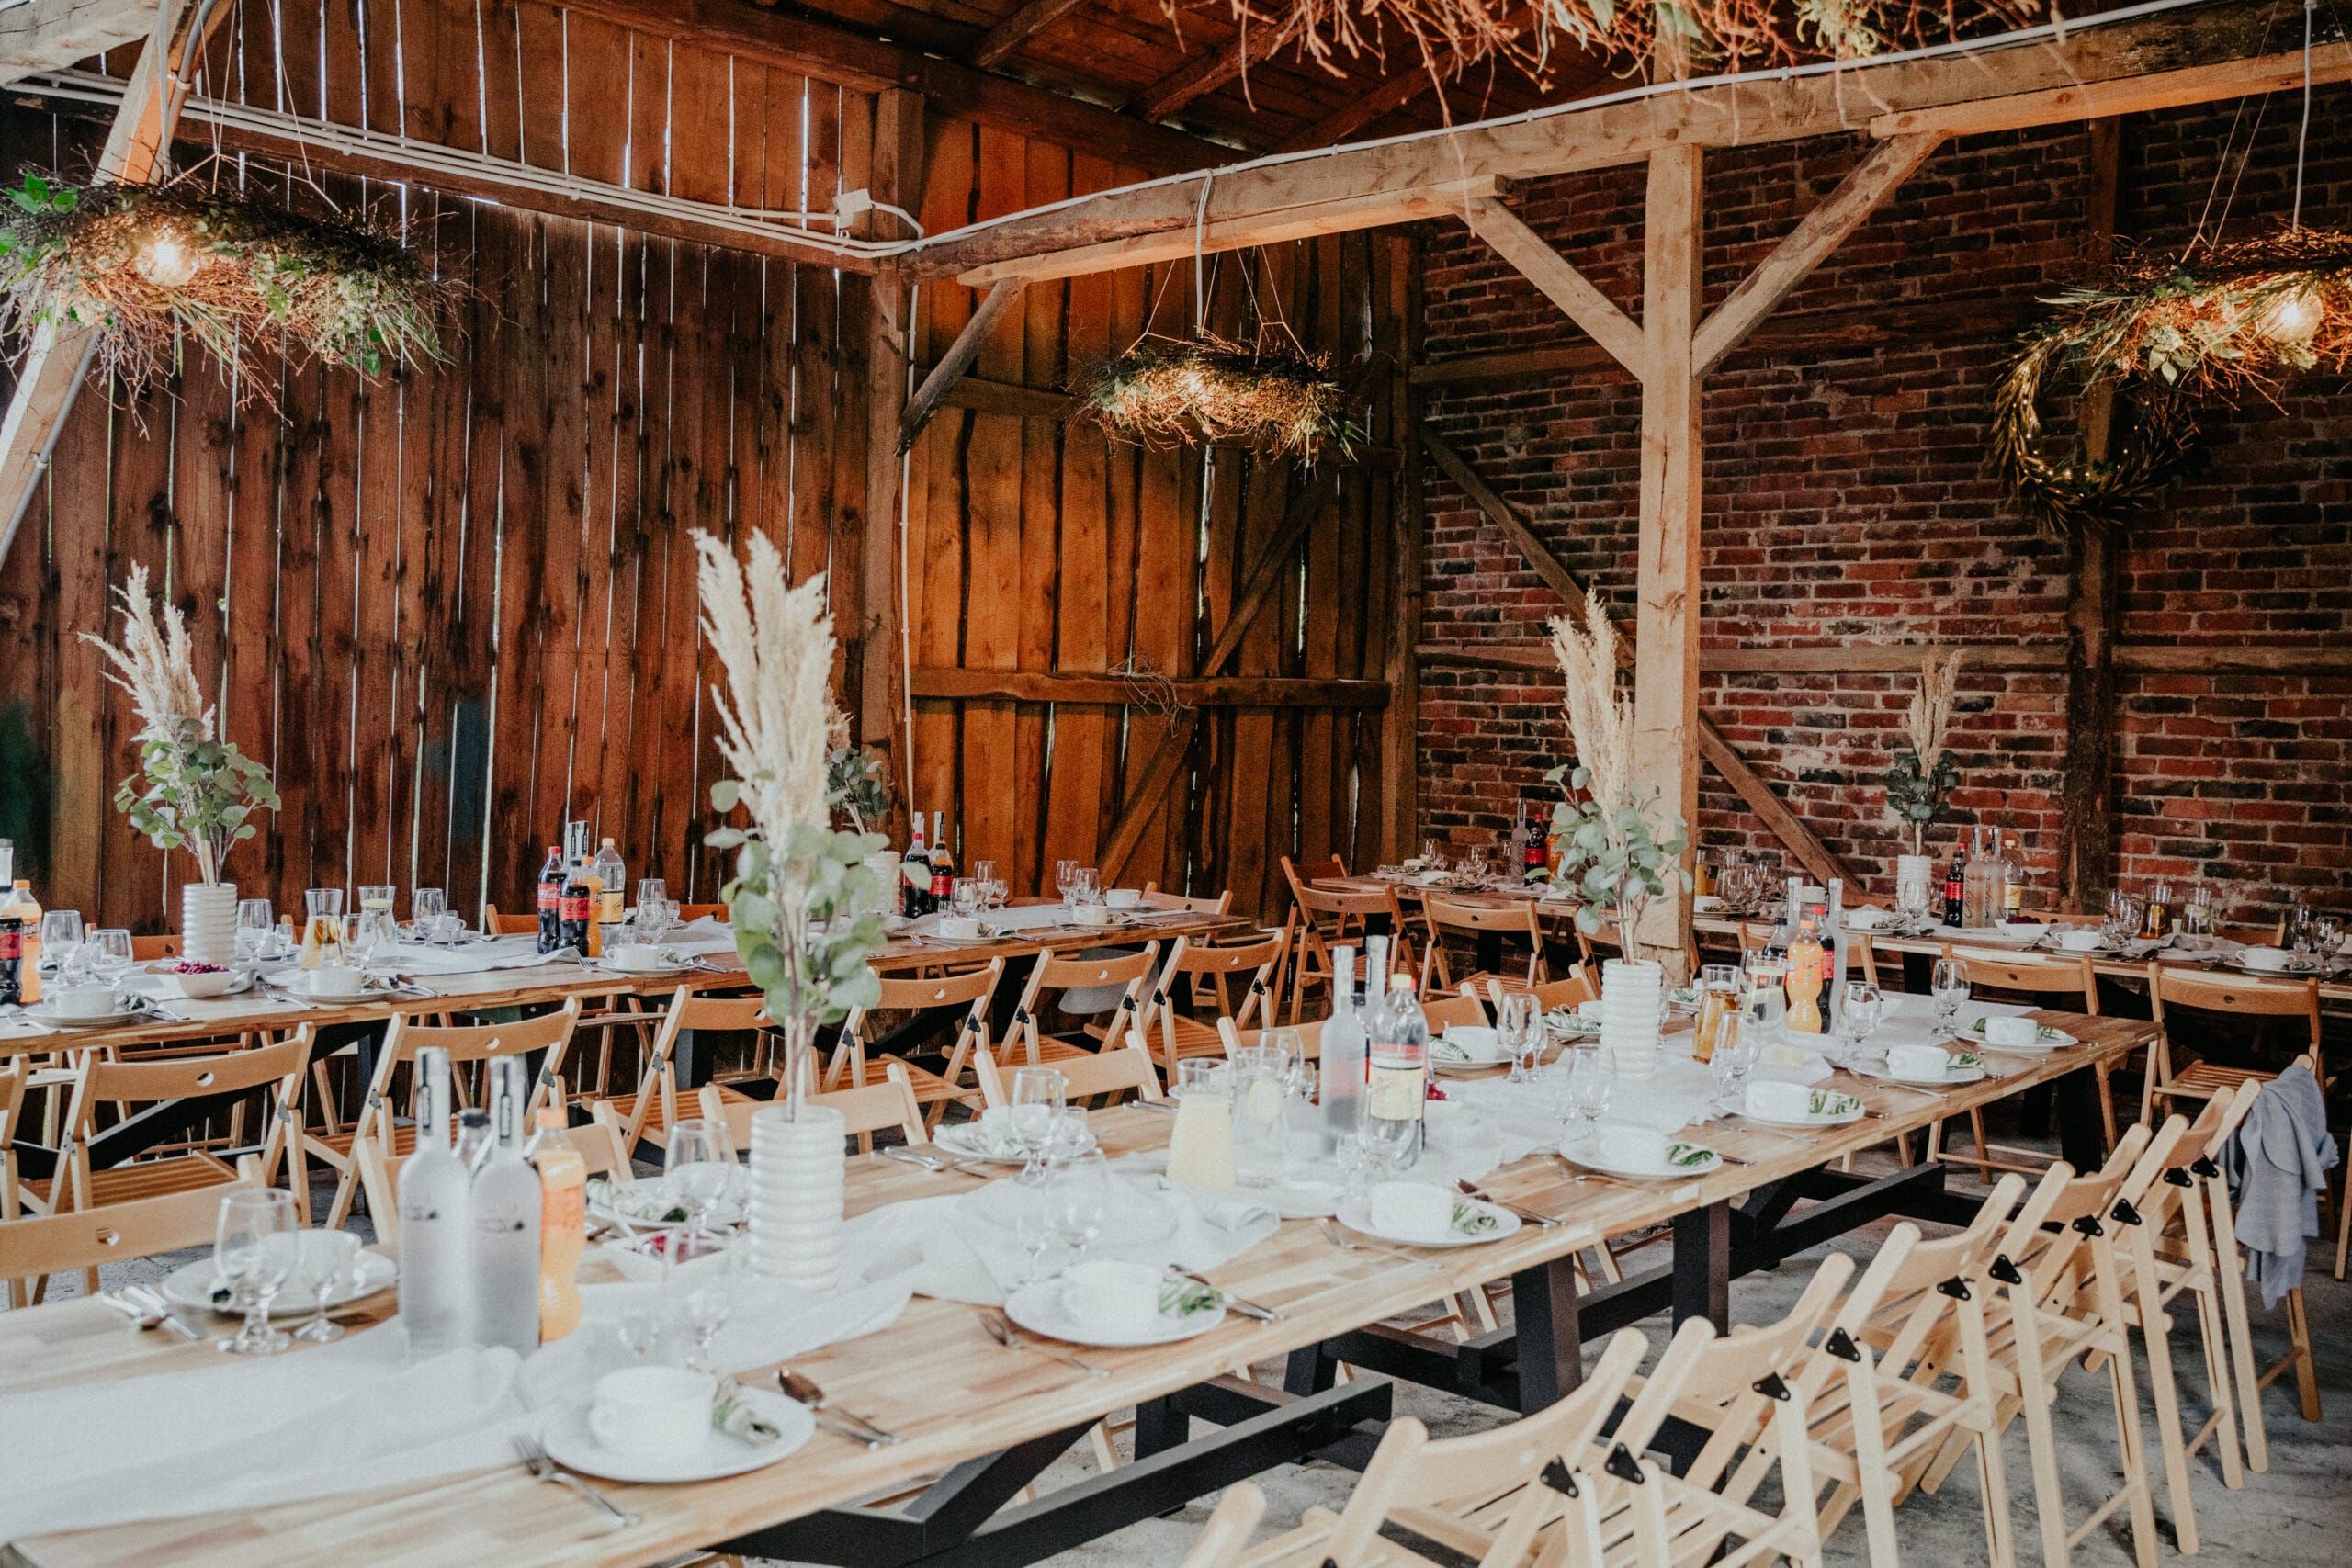 Miejsce na nietypowe wesele w okolicy Warszawy – stodoła w którym można zorganizować imprezę w plenerze